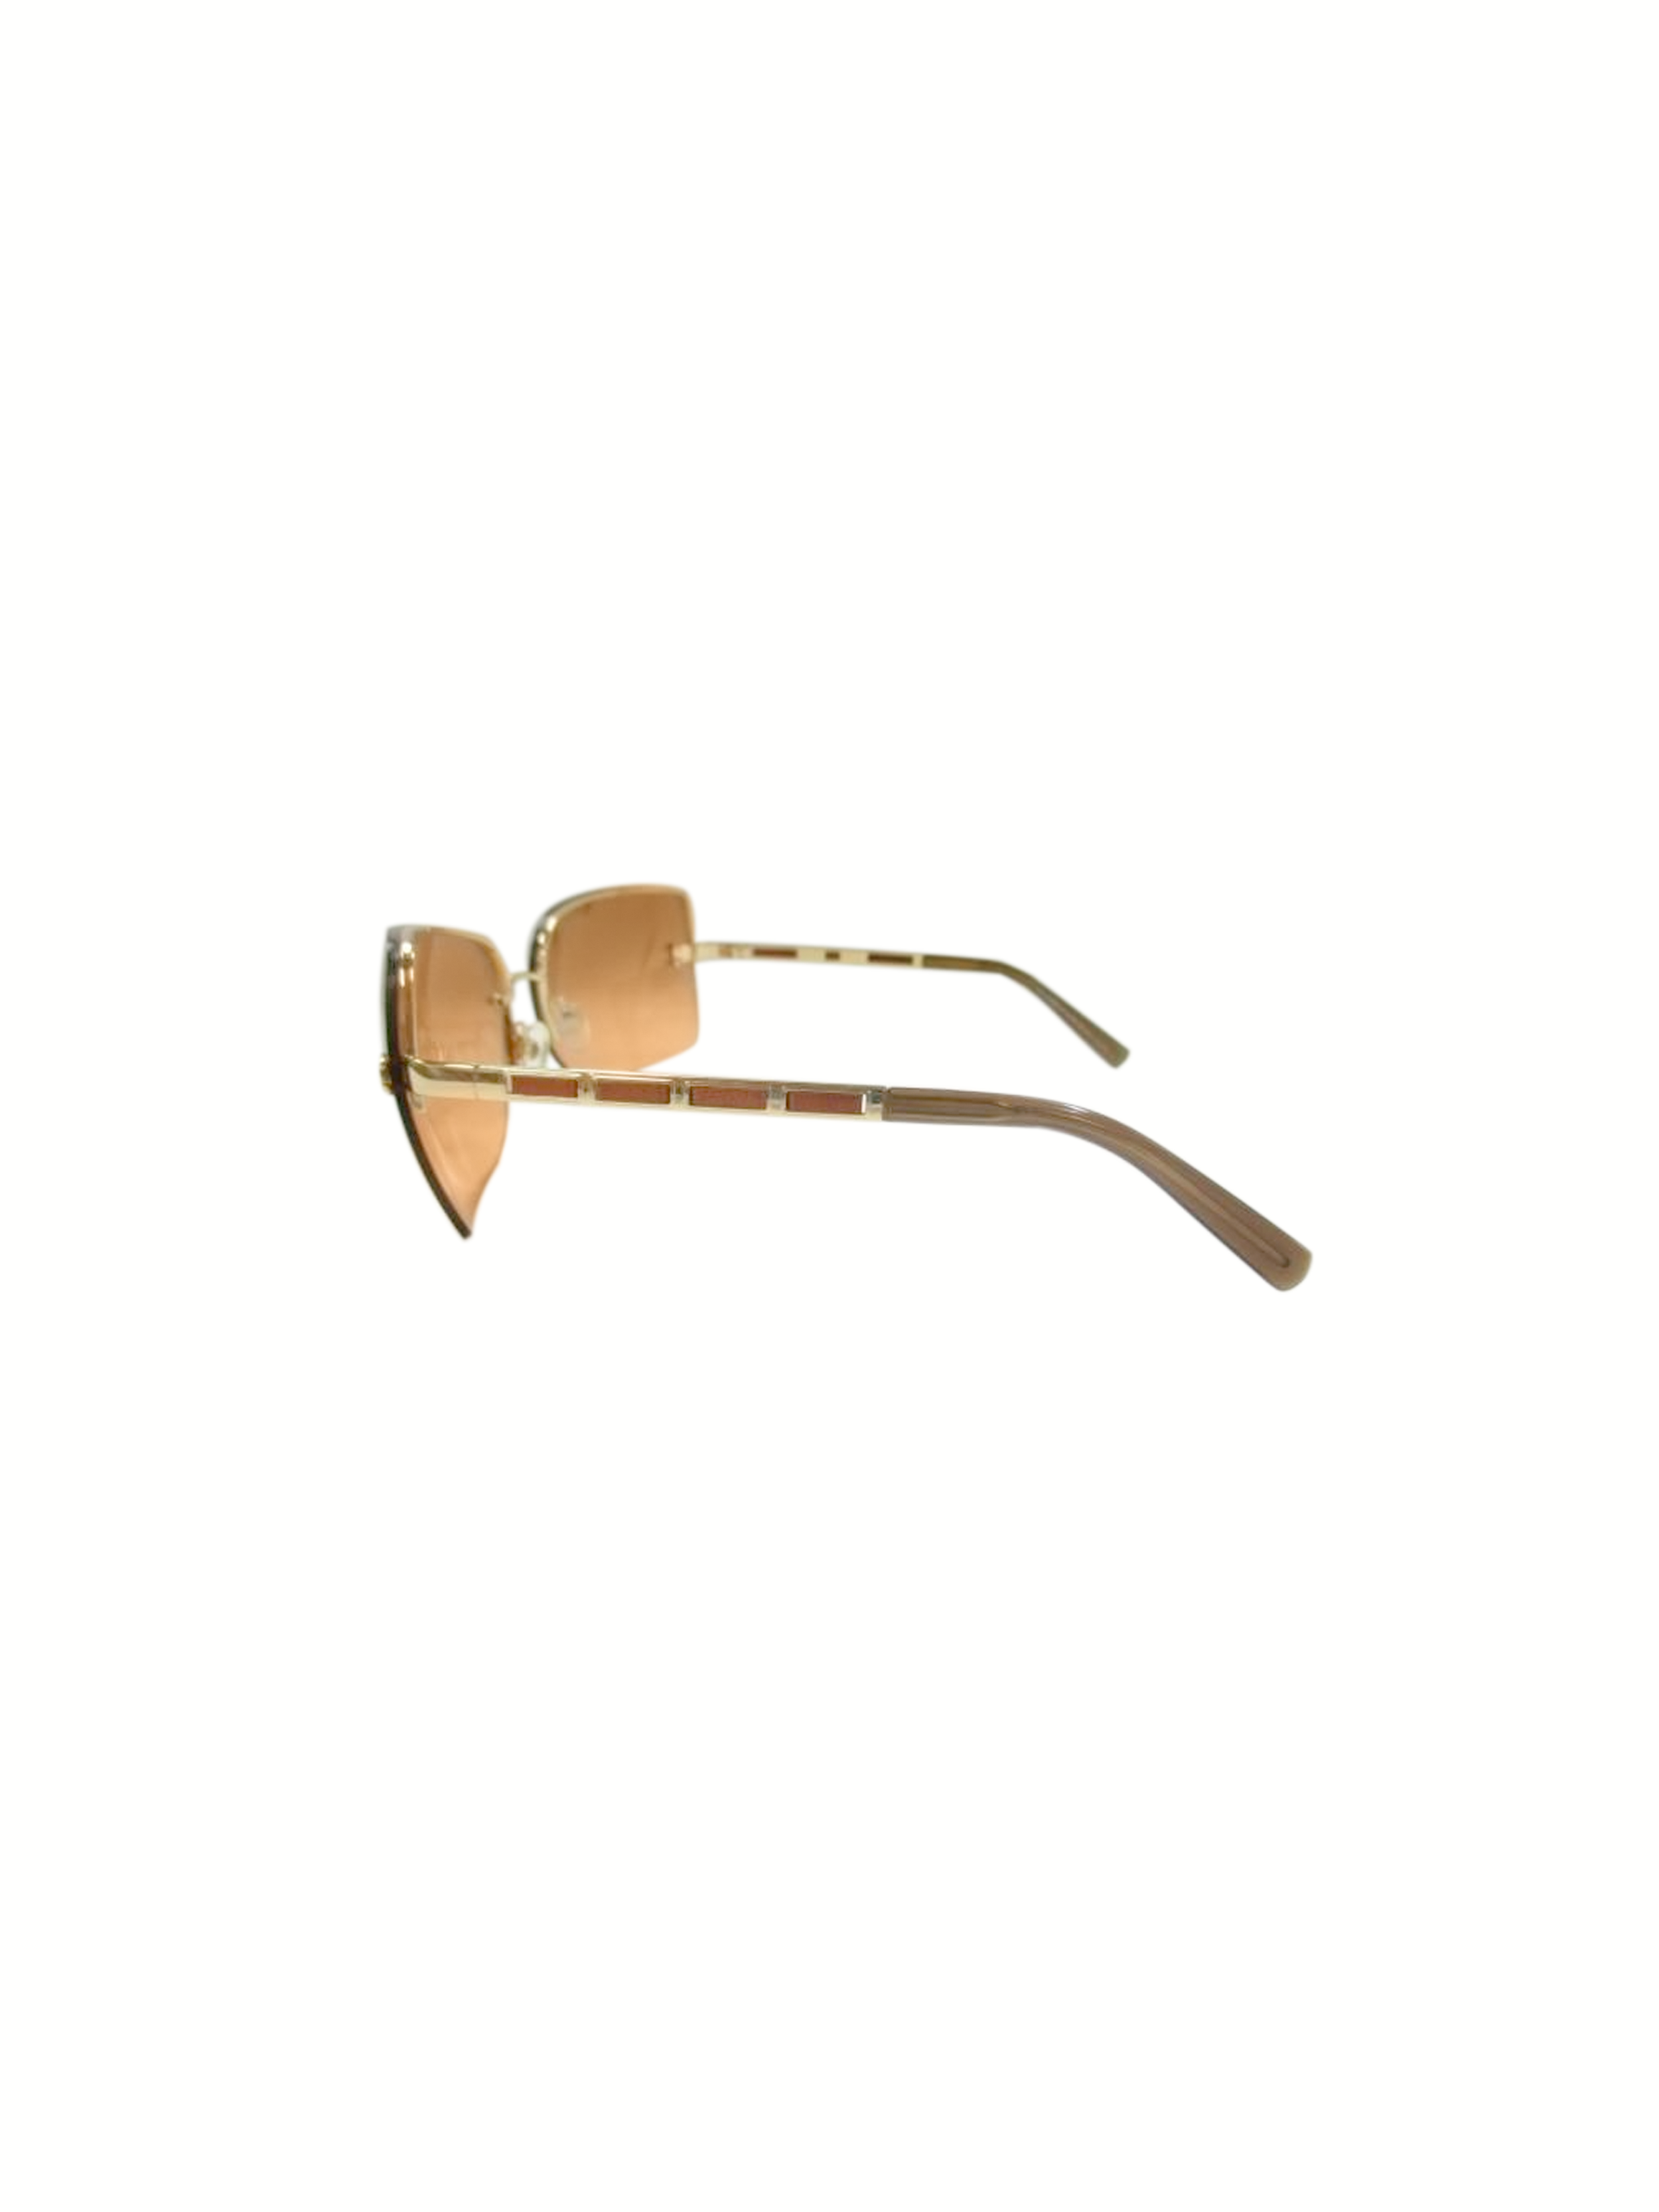 Chanel 2000s Orange Gradient Gold Rare Dangle CC Sunglasses · INTO